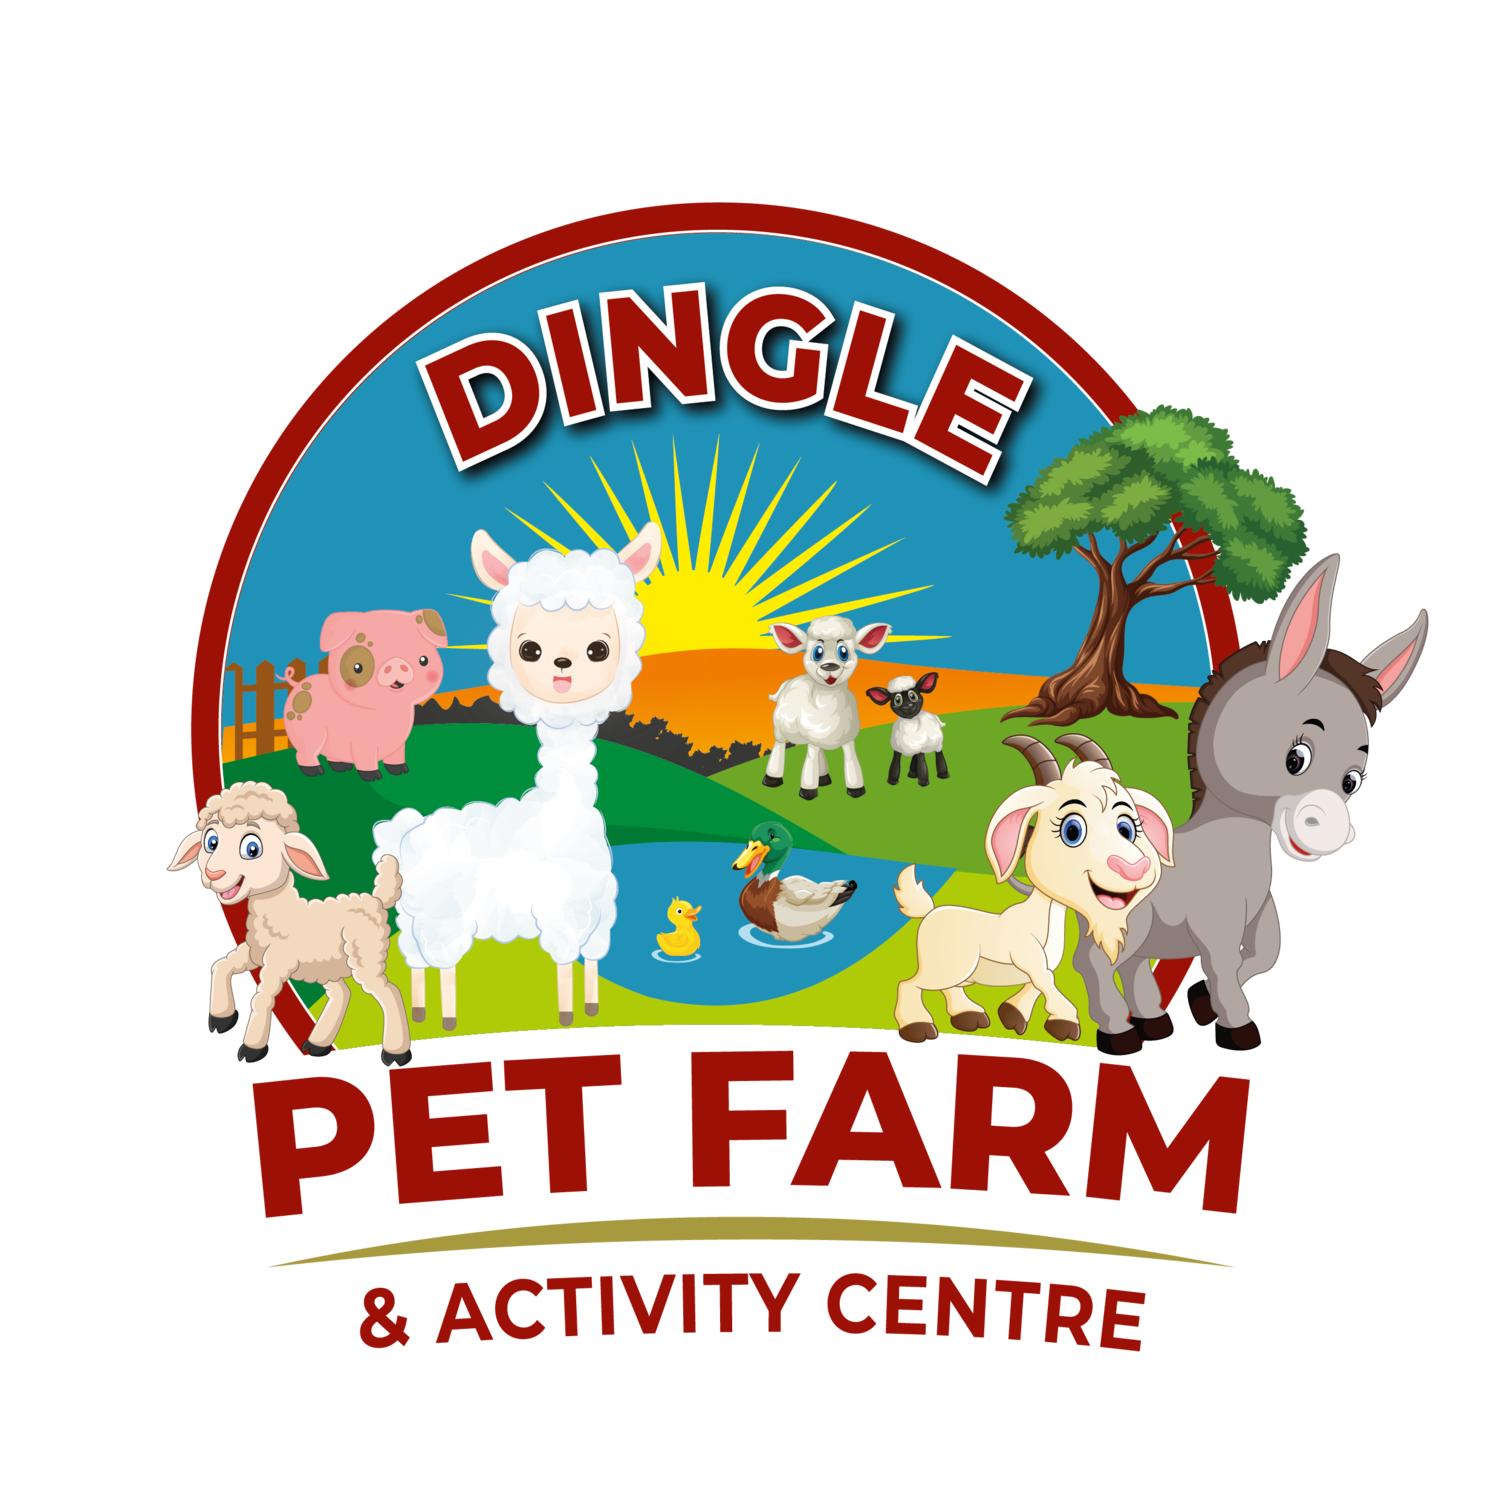 Dingle Pet Farm